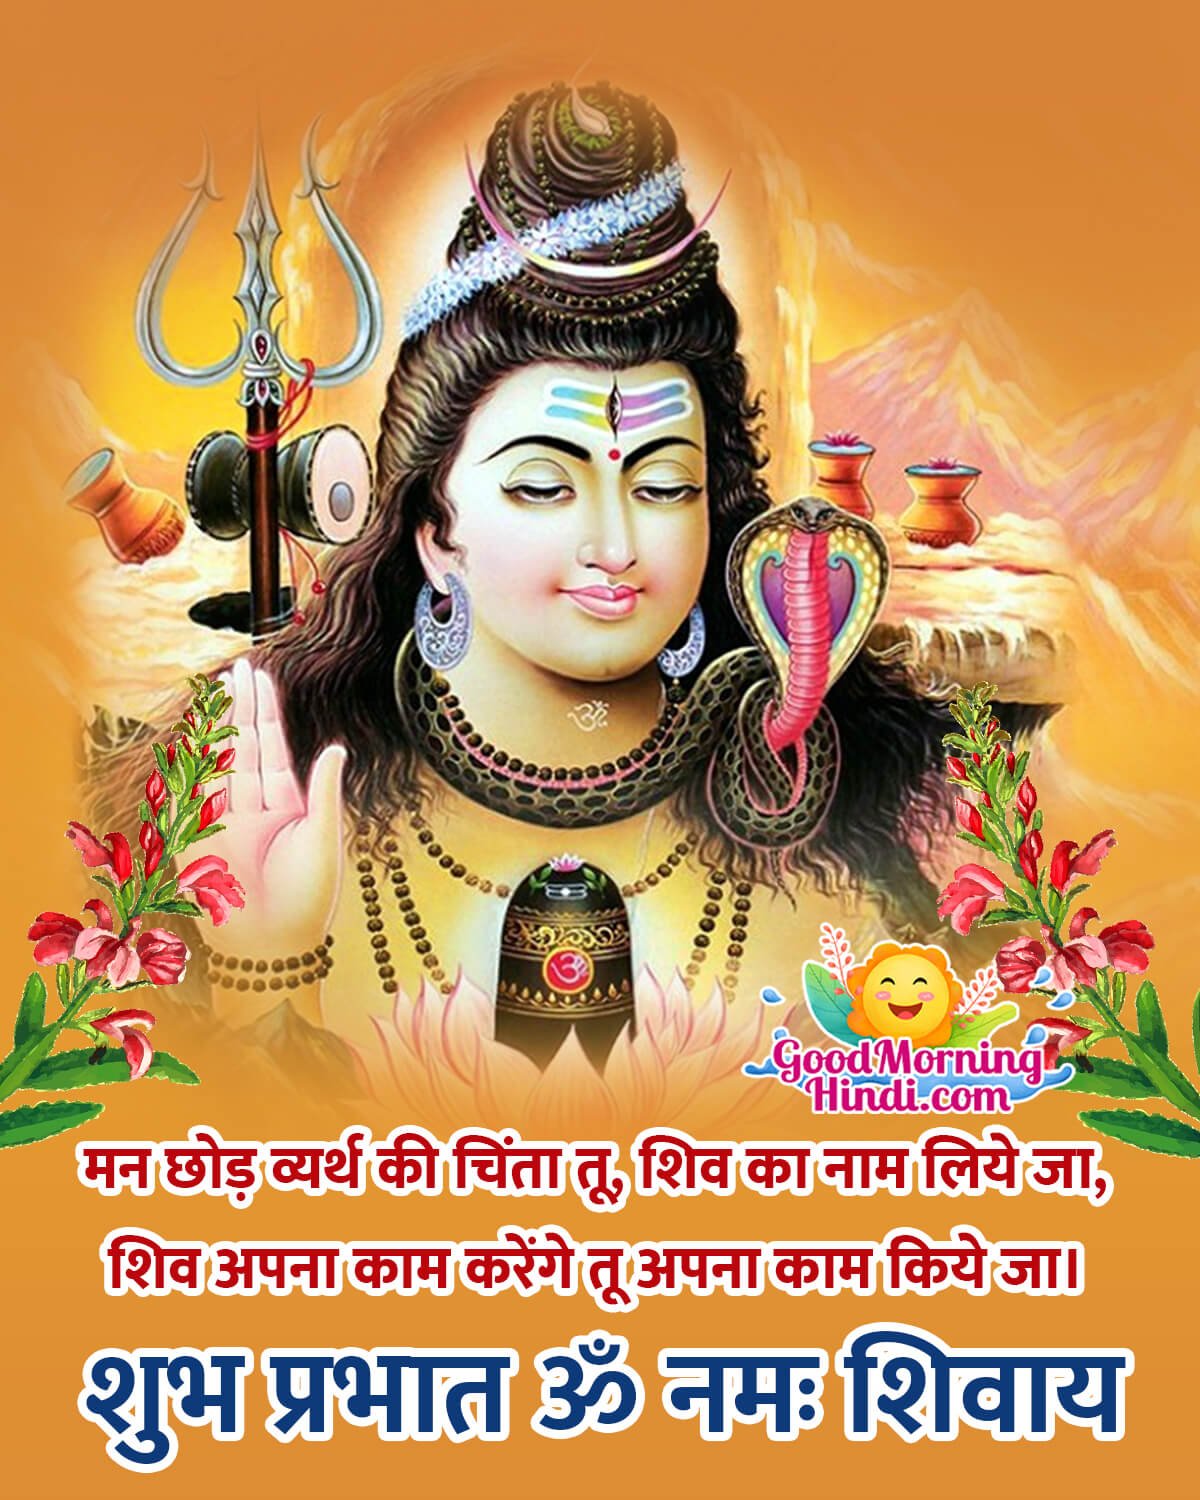 Good Morning Shiva Quotes In Hindi